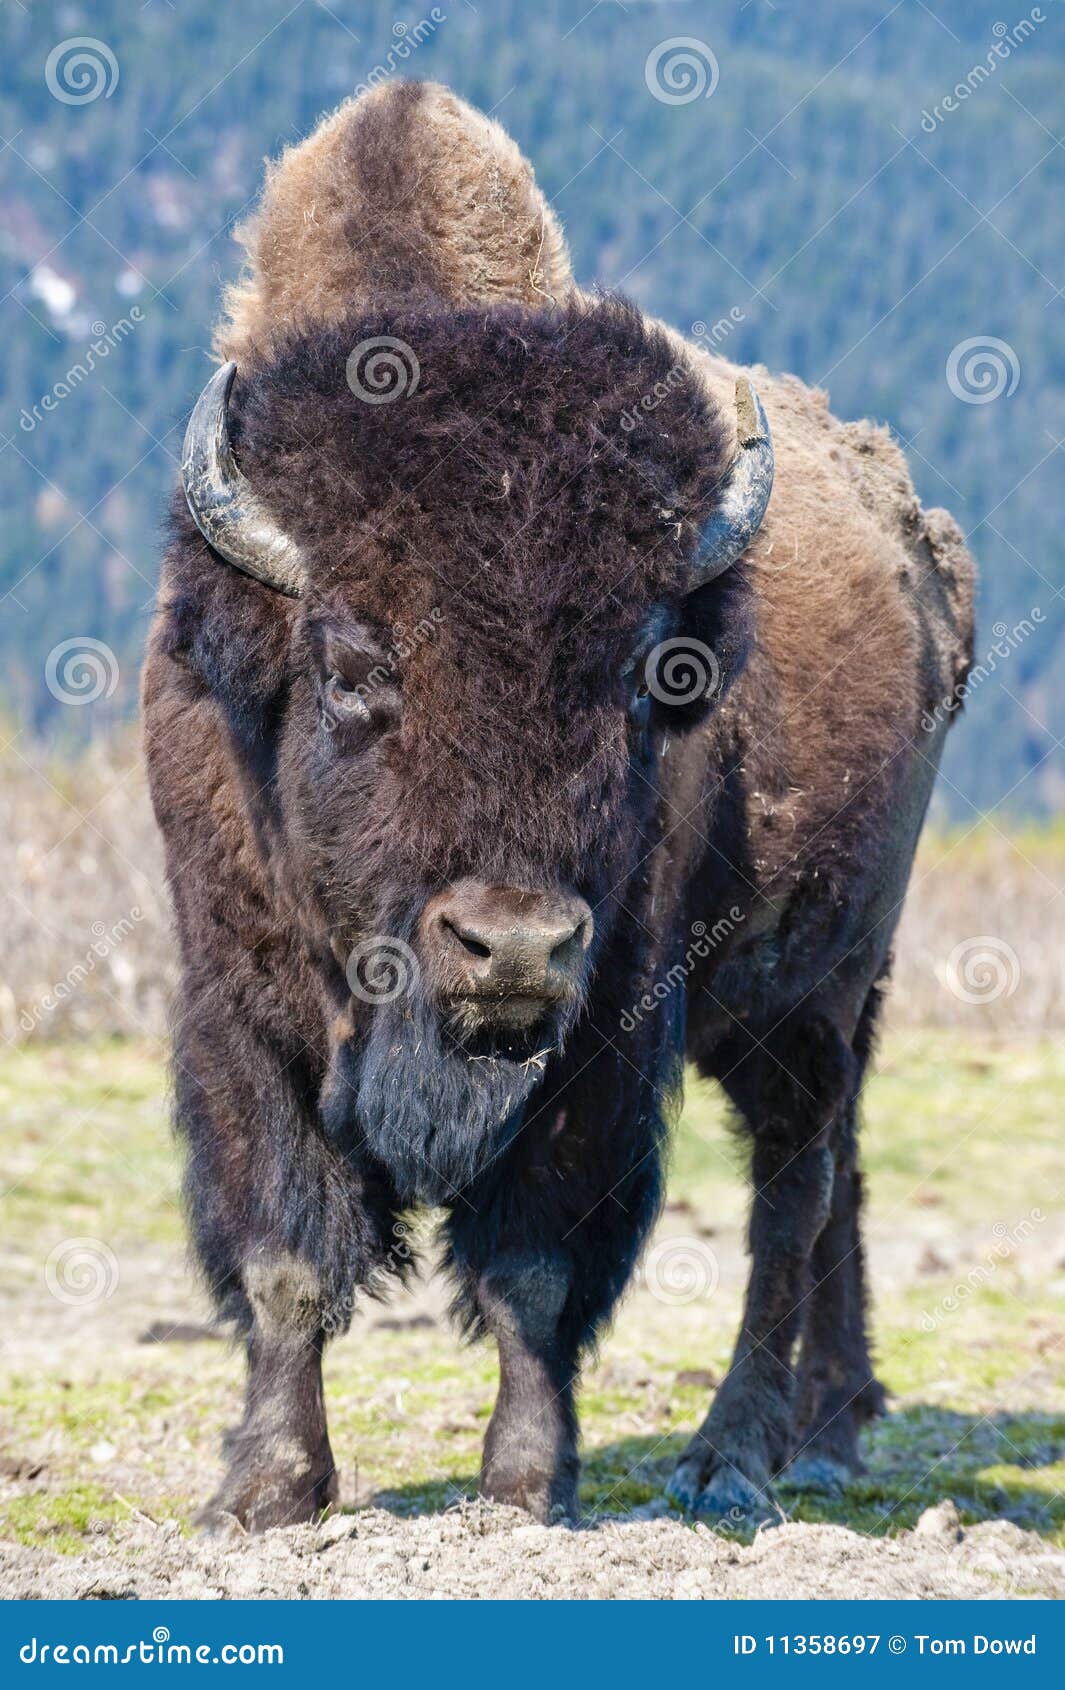 wood bison